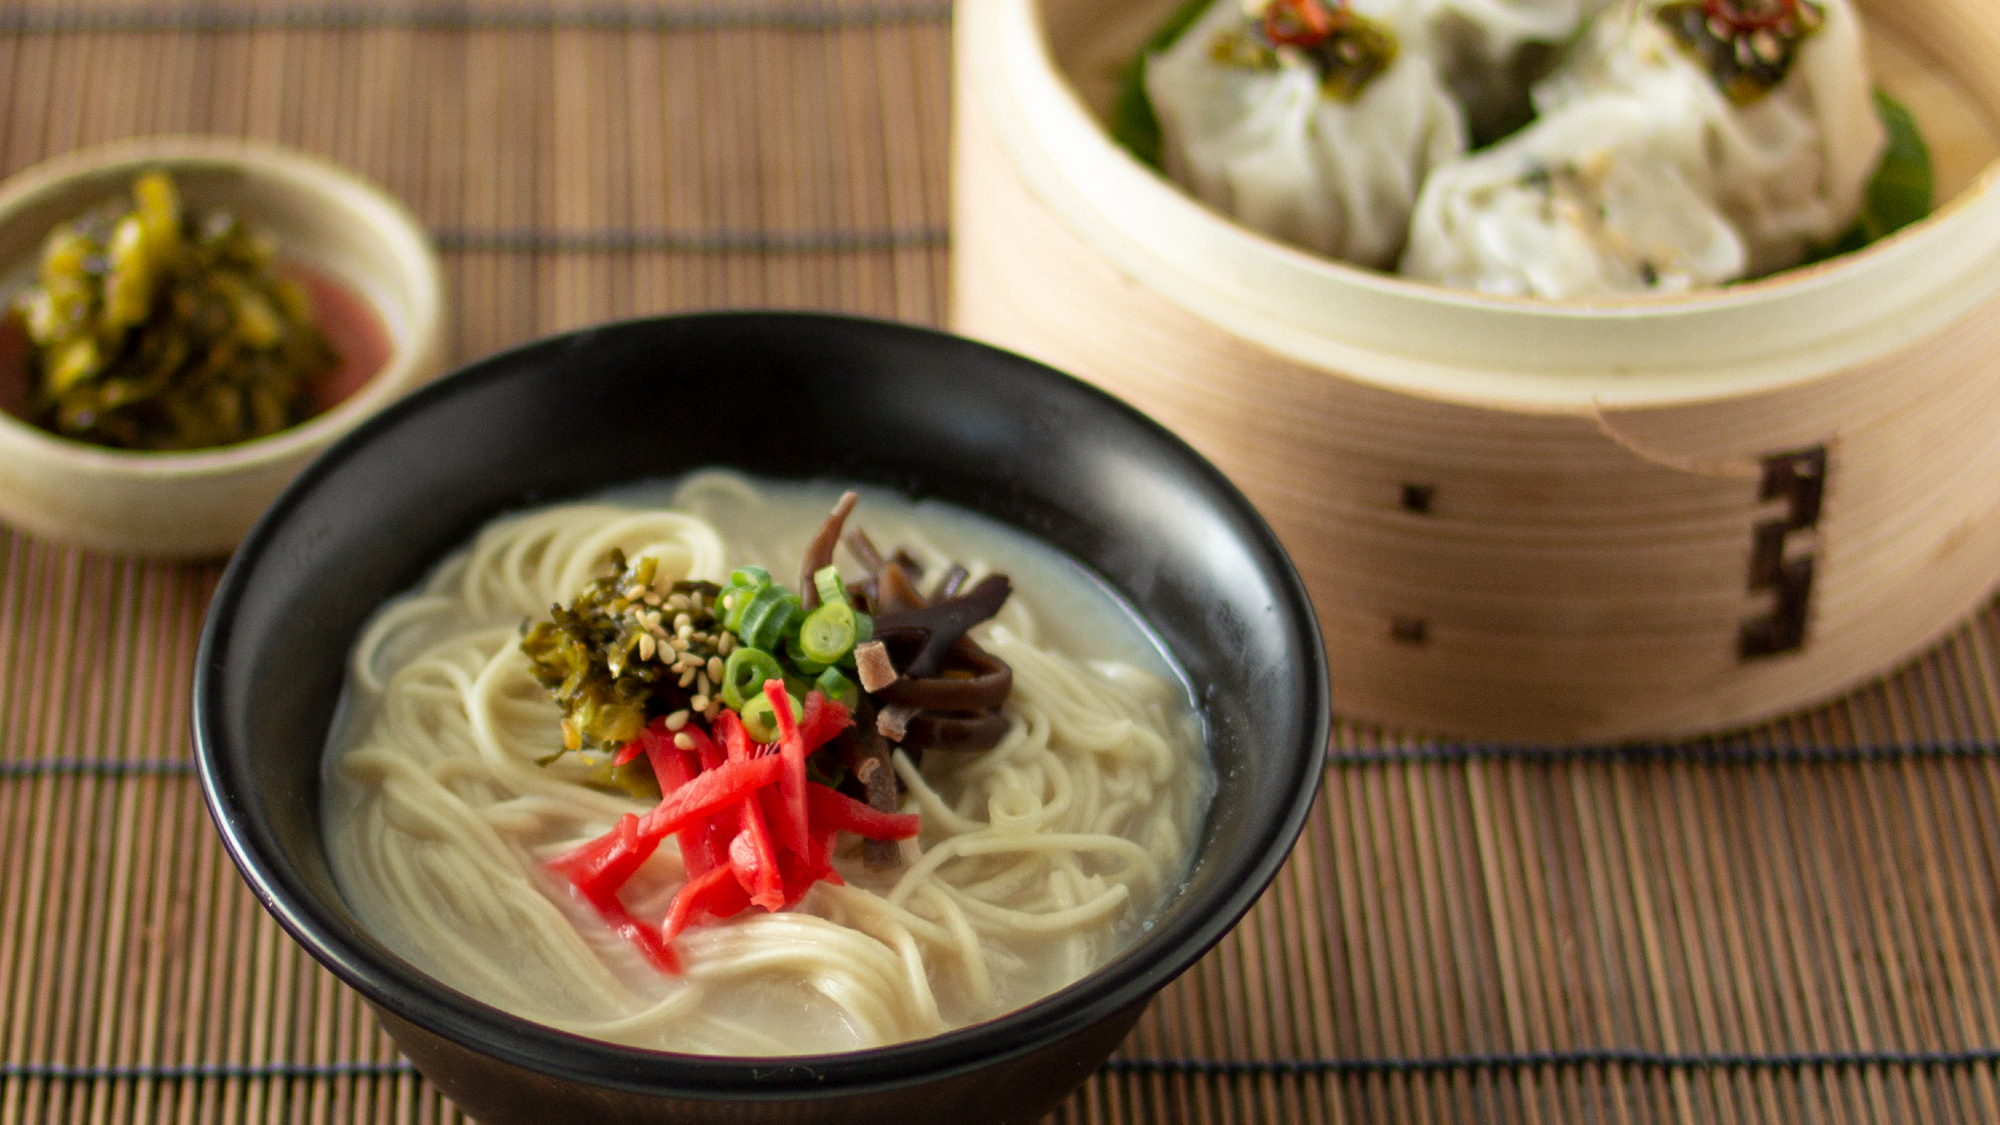 ◇豚骨でとった白濁のスープと極細の麺が特徴の、福岡県を代表する名物グルメ「博多とんこつラーメン」